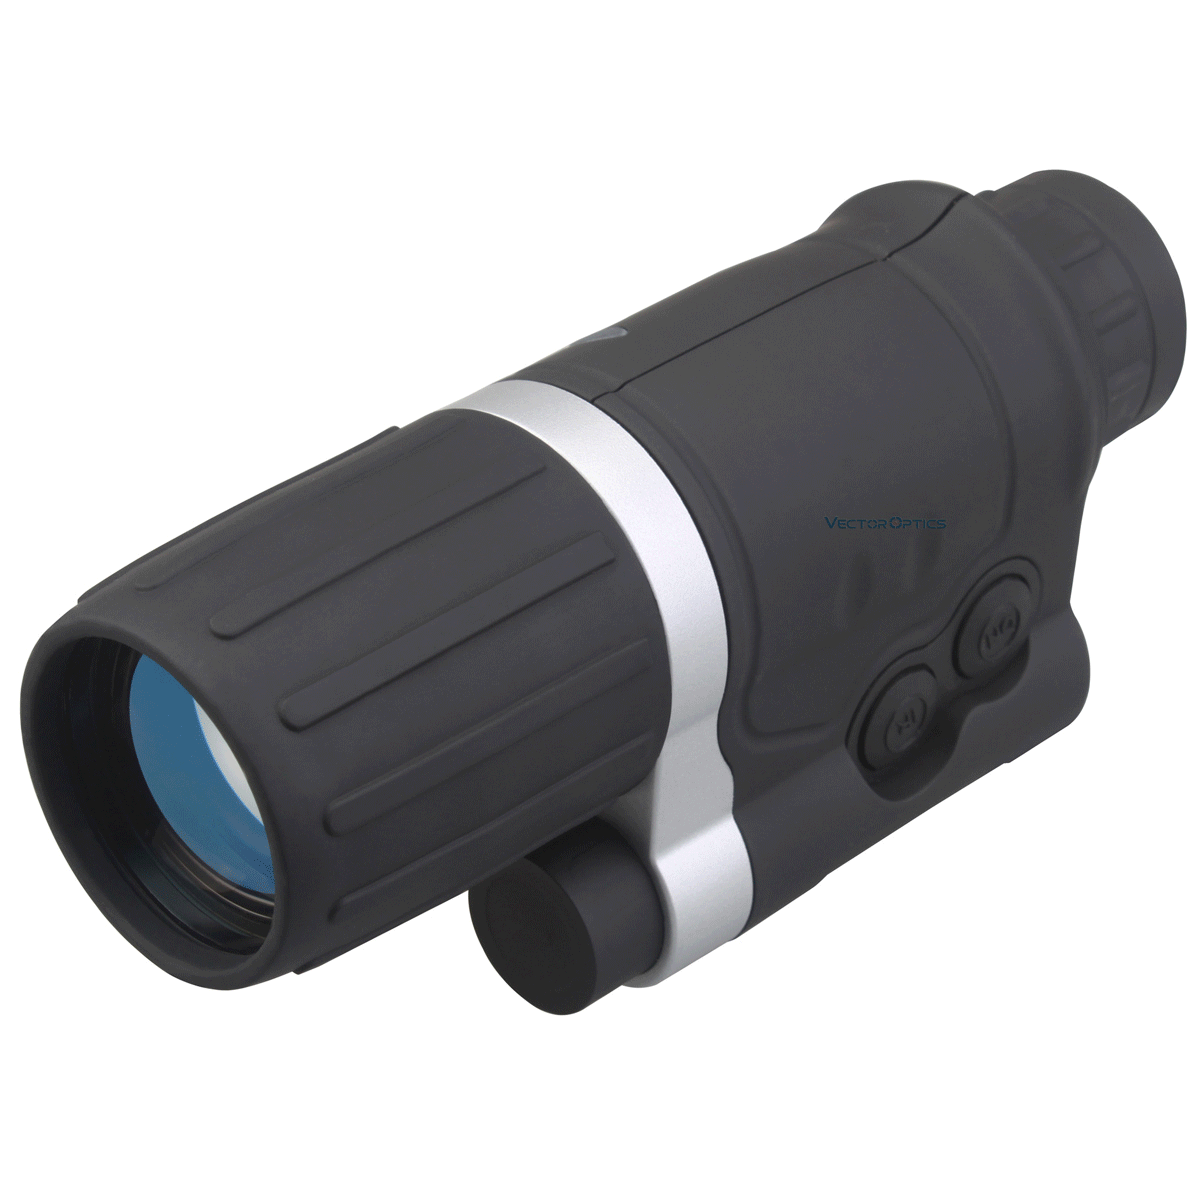 Векторная оптика 3X42 3x увеличение Gen 1 инфракрасный ИК монокуляр ночного видения прицел охота